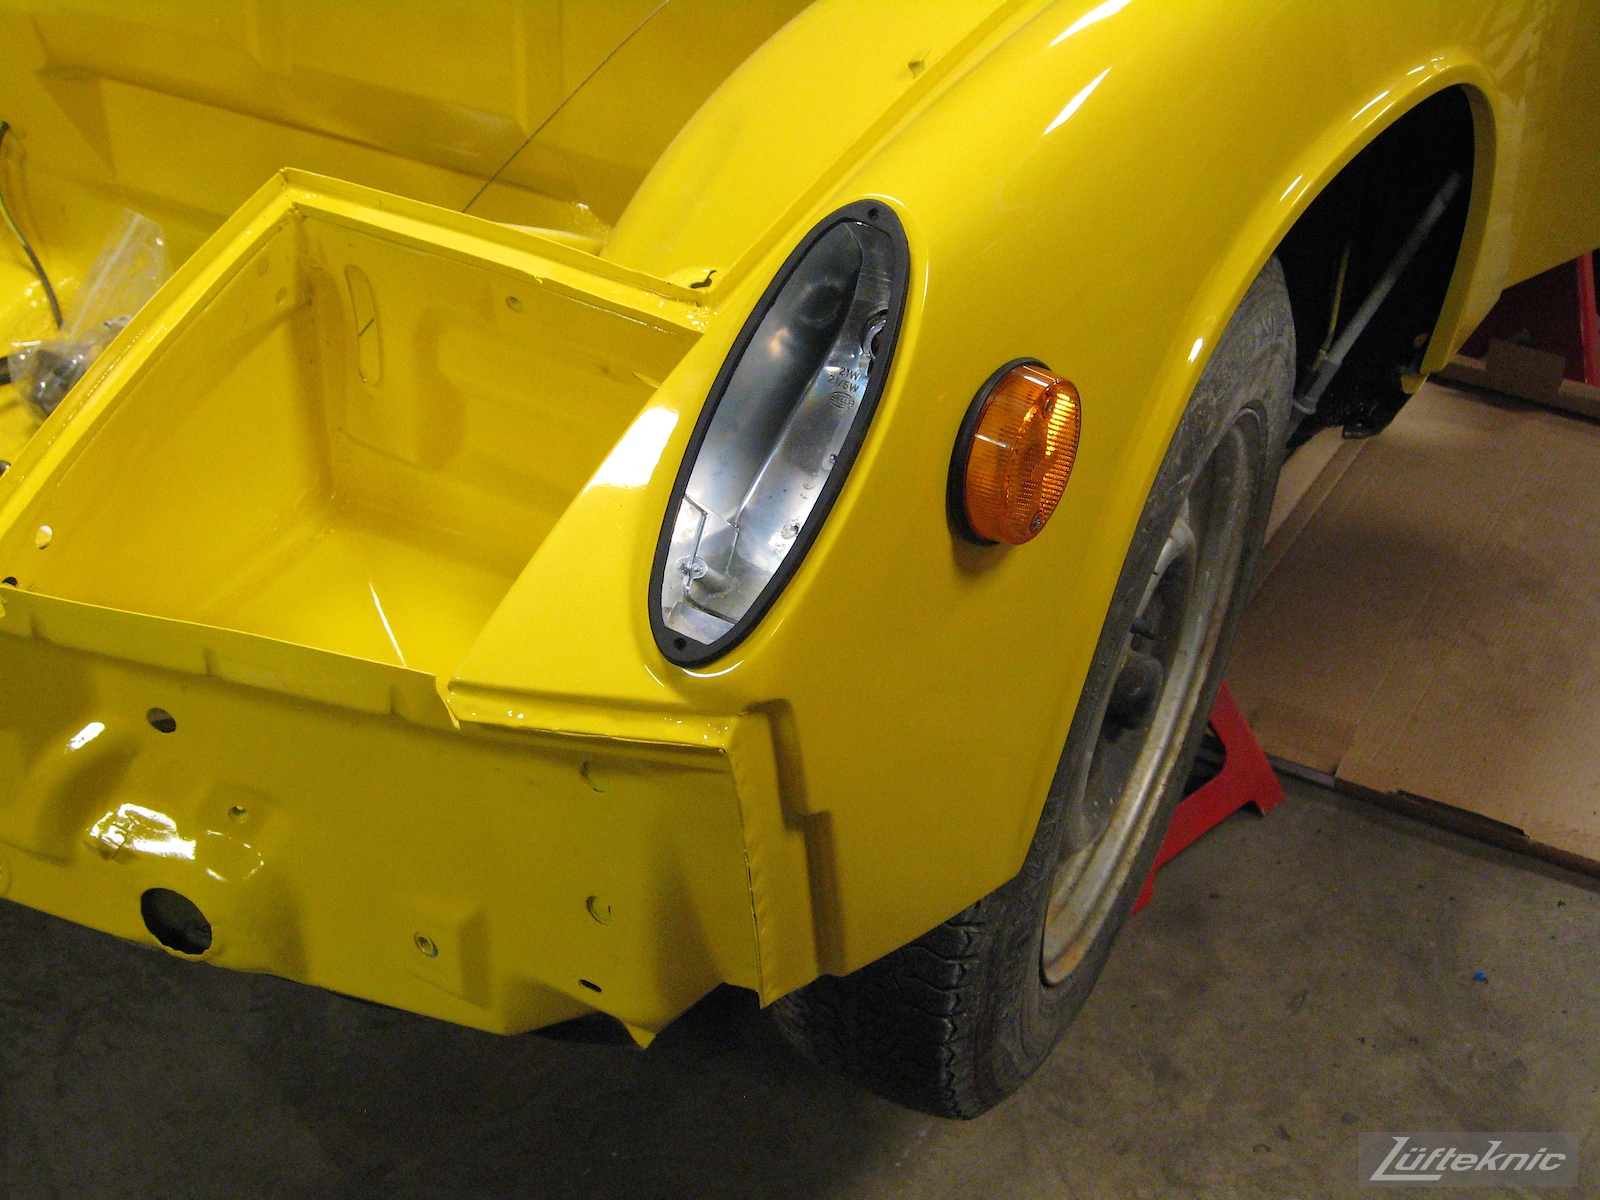 Reassembling a restored yellow Porsche 914 at Lufteknic.